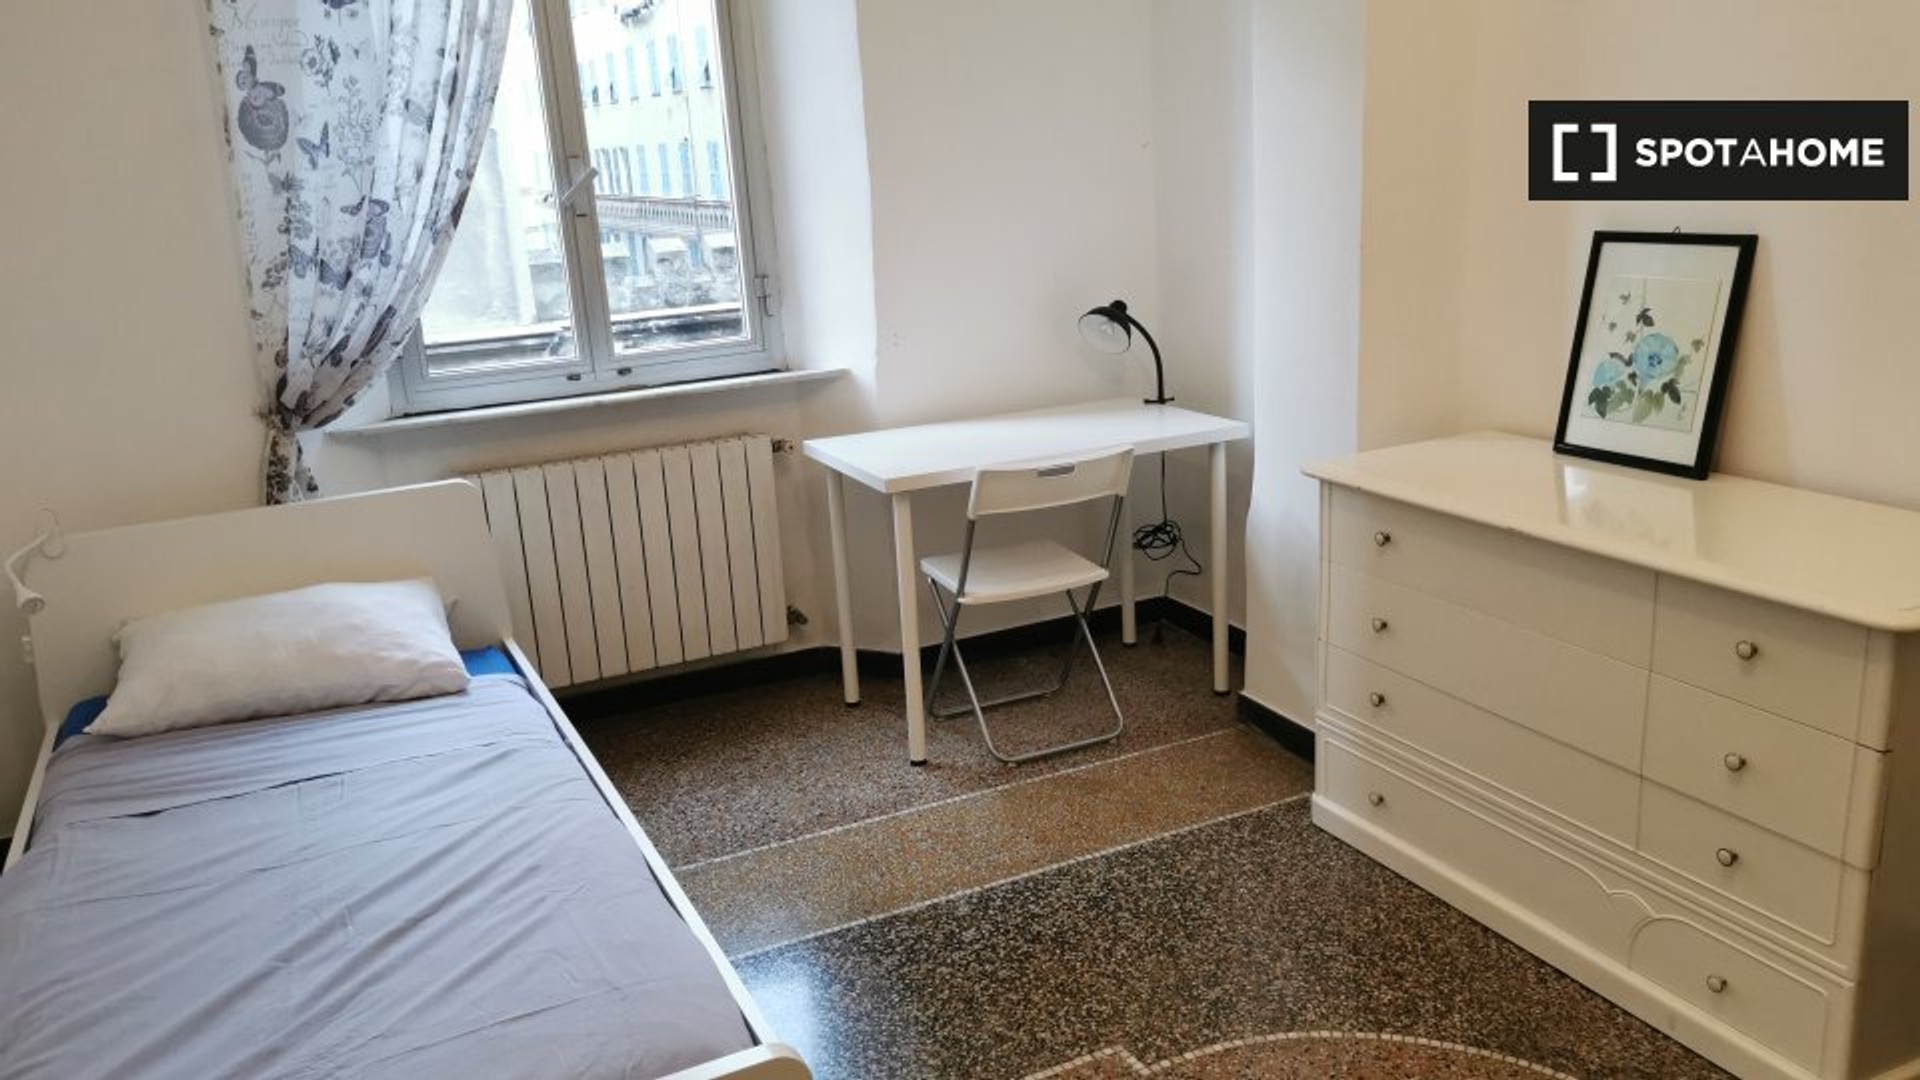 Alquiler de habitaciones por meses en Génova